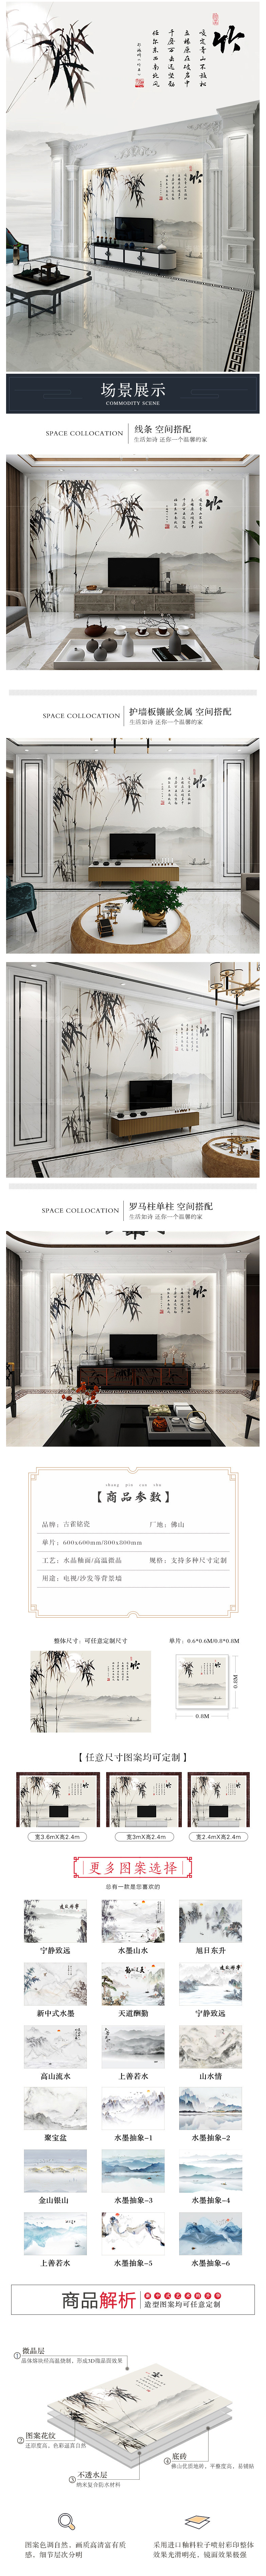 现代新中式3d水墨花鸟电视背景墙砖中国风景瓷砖客厅卧室沙发墙画-阿里巴巴.png